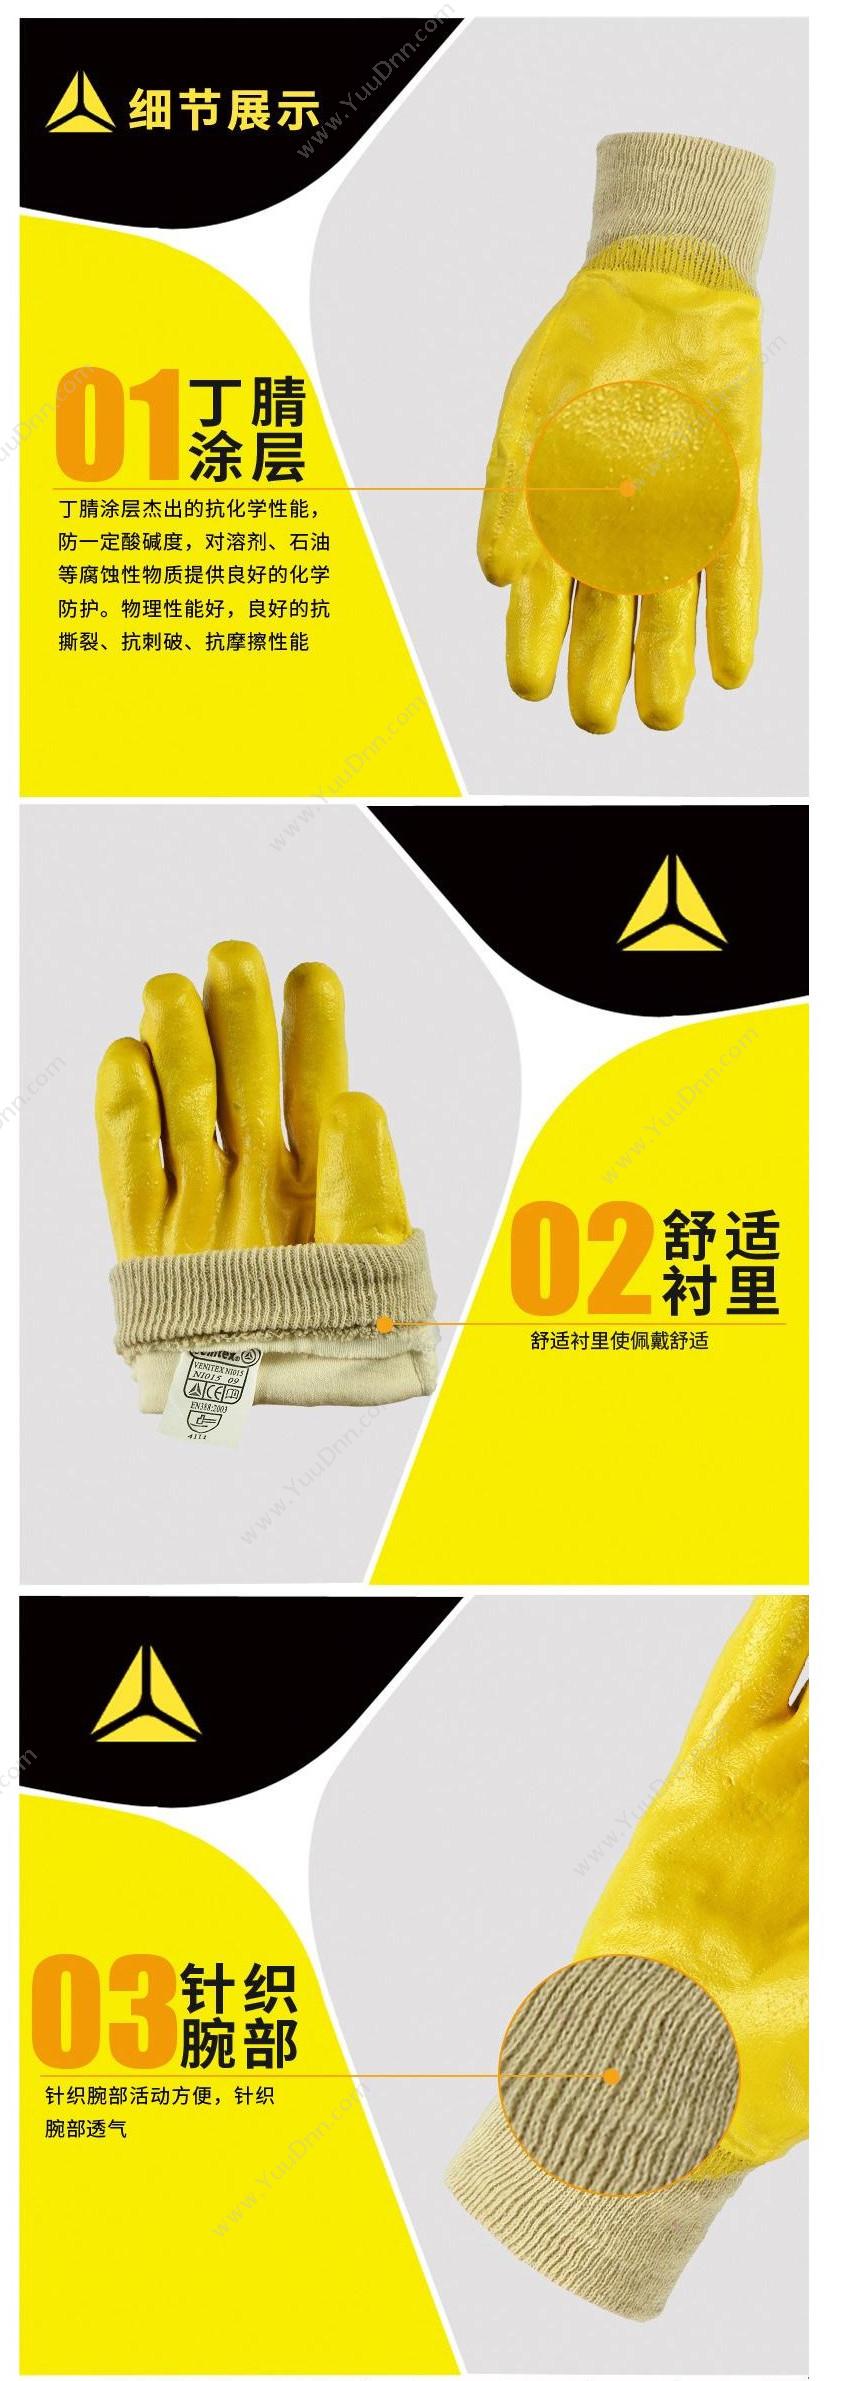 代尔塔 Delta 201015 轻型丁腈涂层手套 NI015/7（黄） 12副/打 普通手套